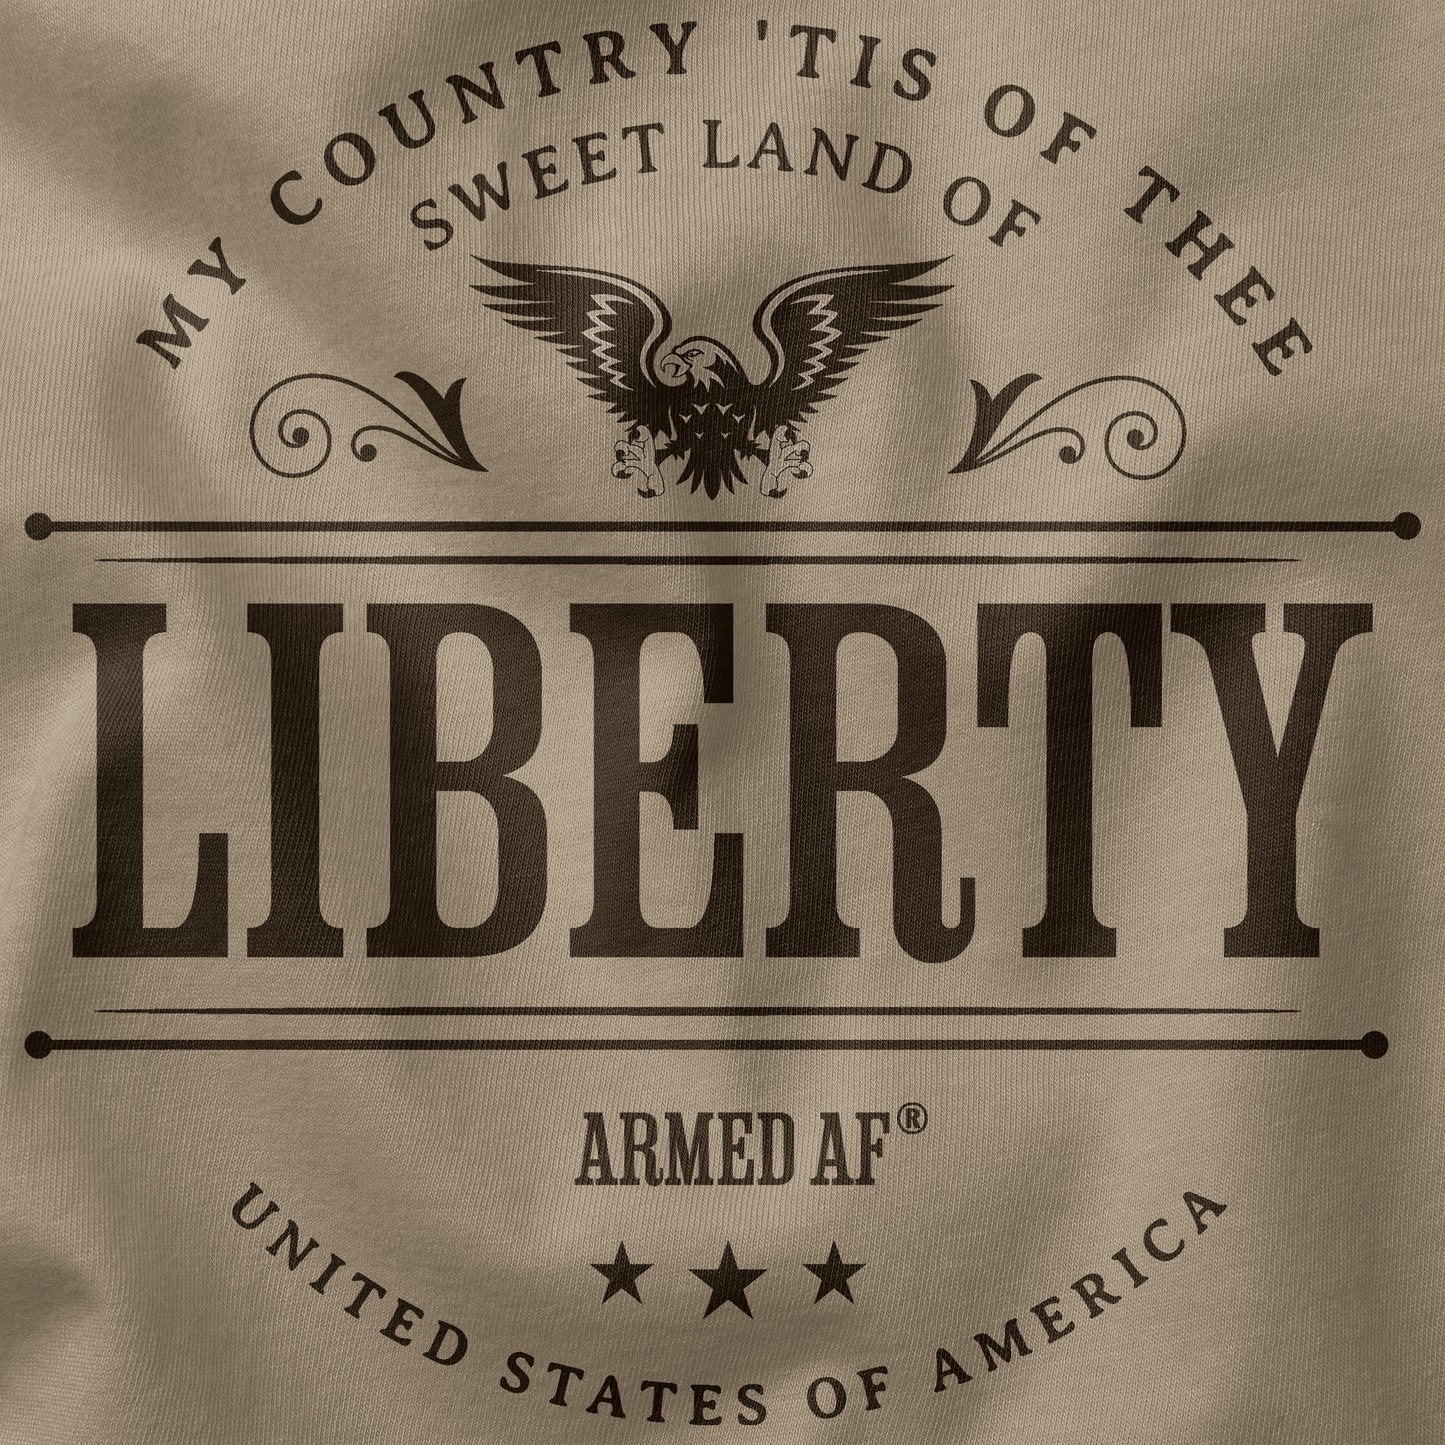 Sweet land of liberty t-shirt closeup